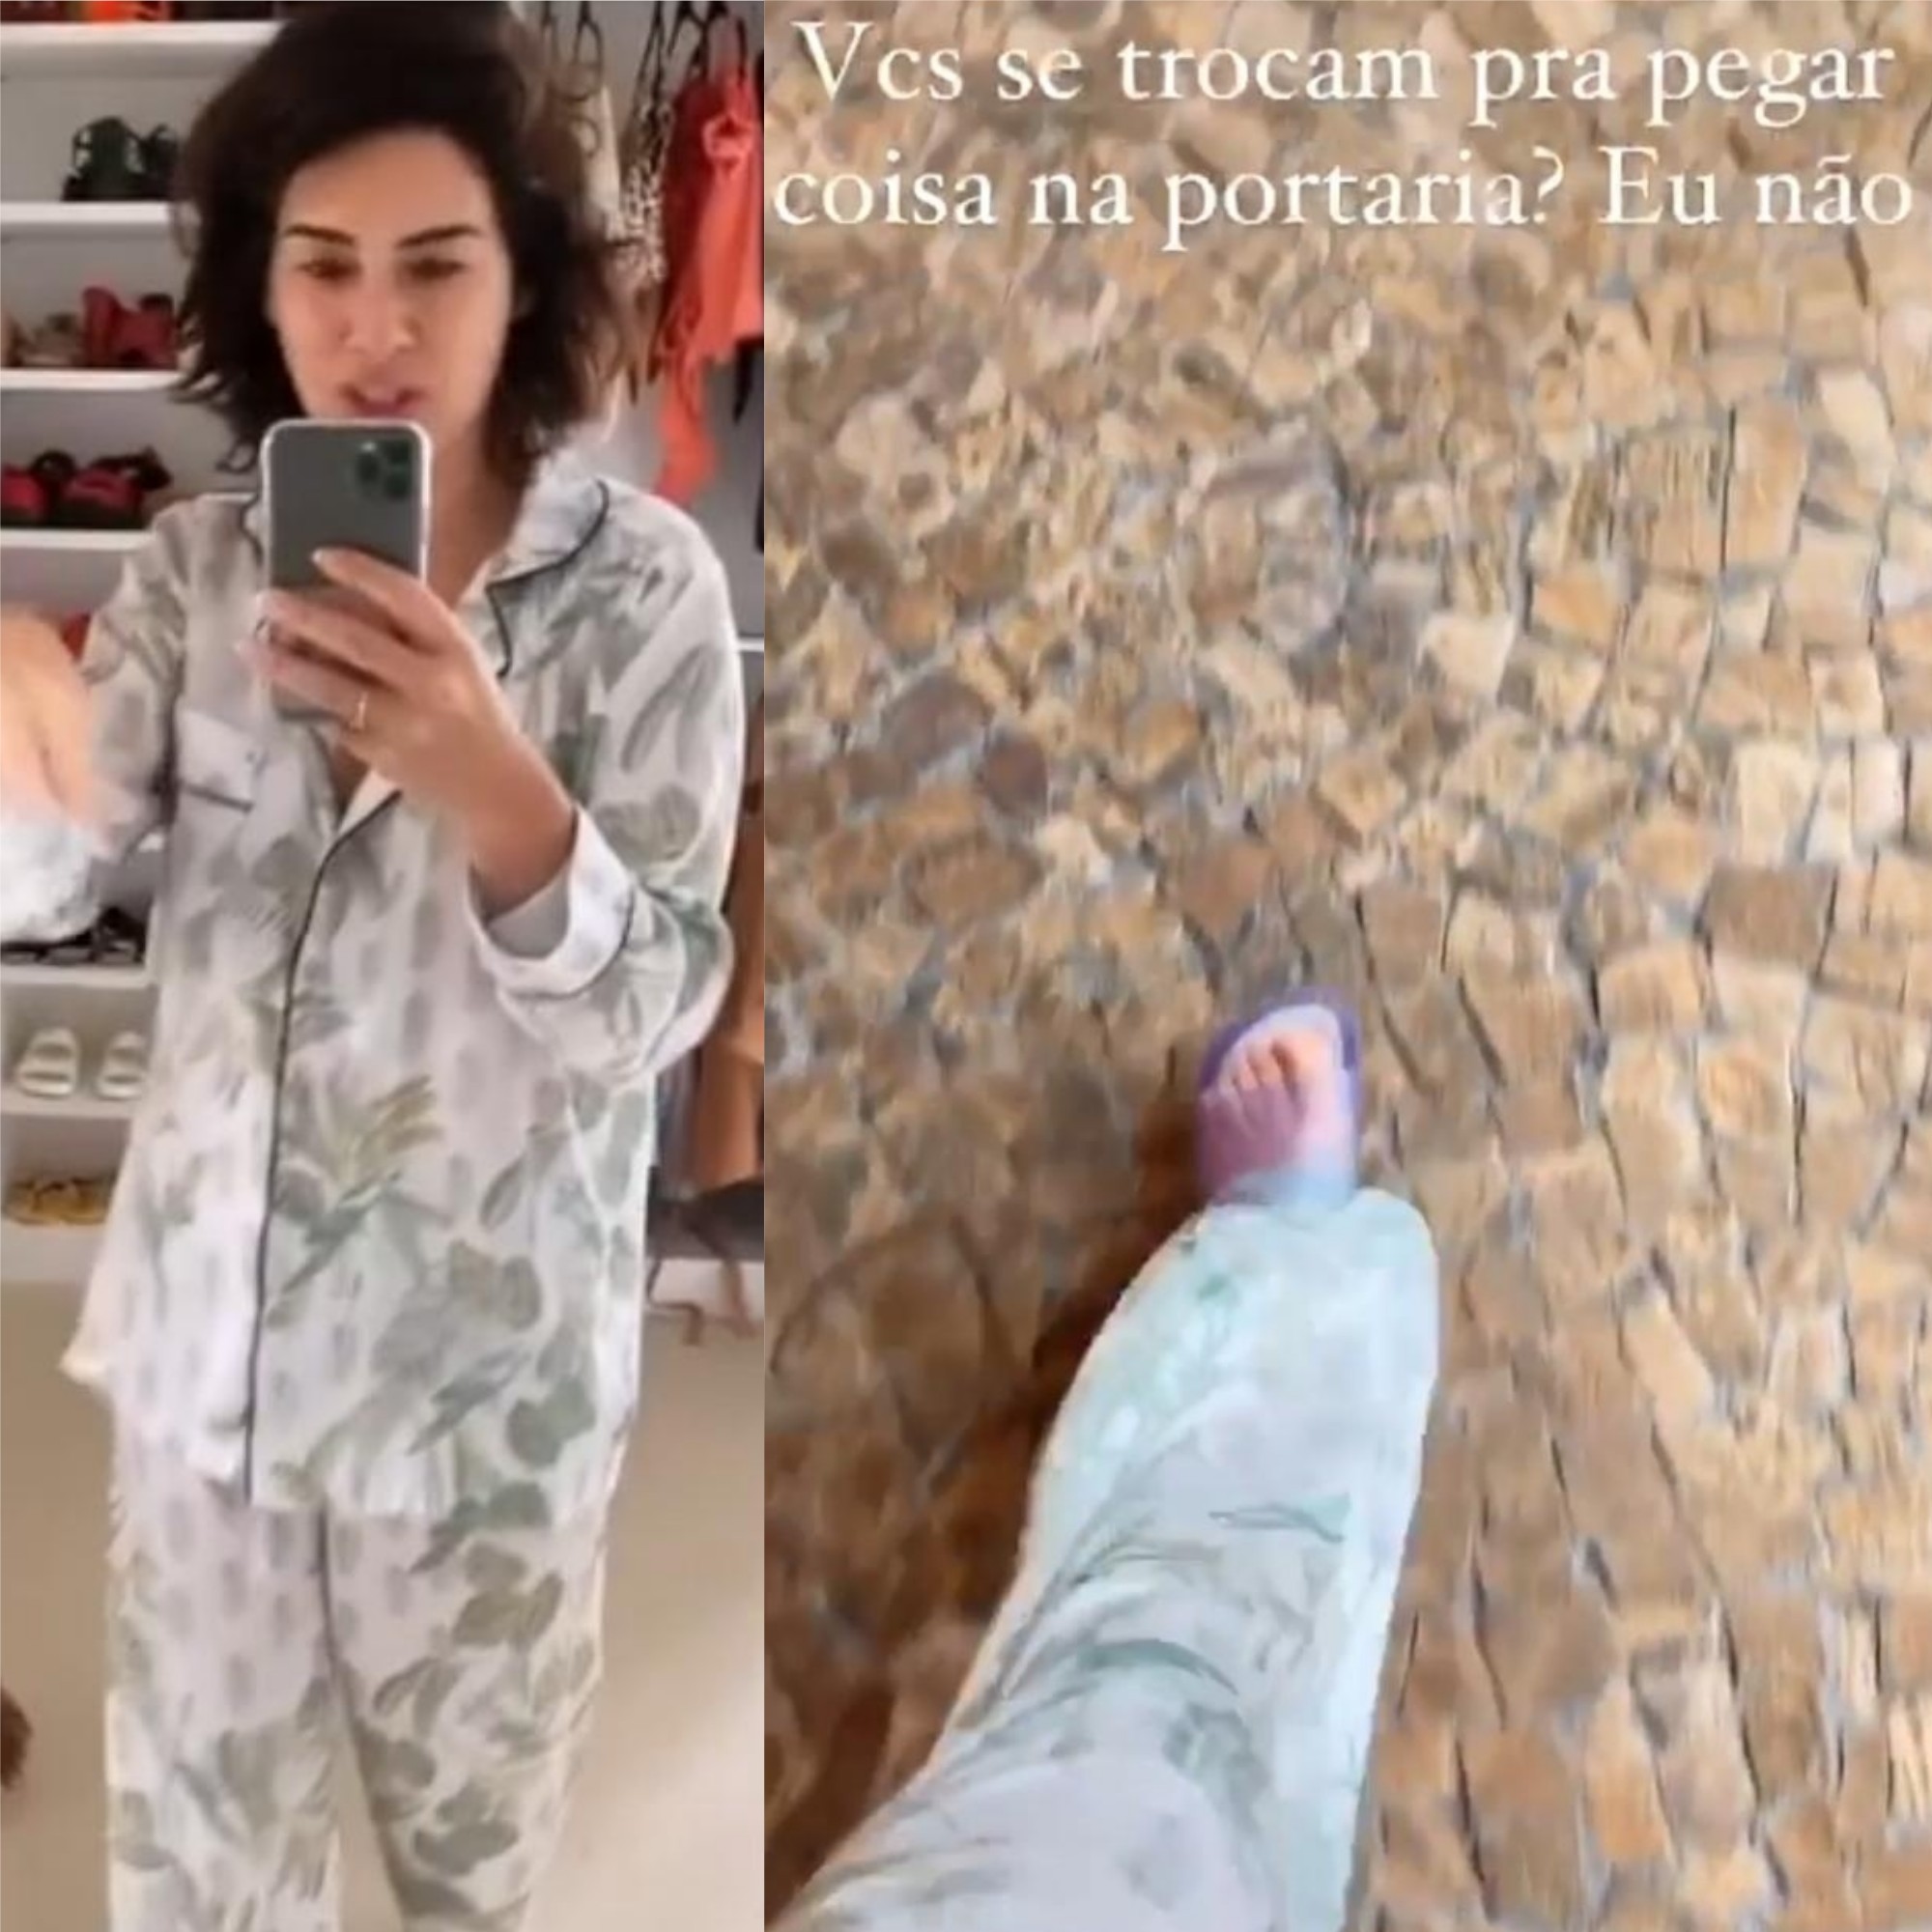 Fê Paes Leme vai buscar encomenda na portaria de pijama (Foto: Reprodução/Instagram)